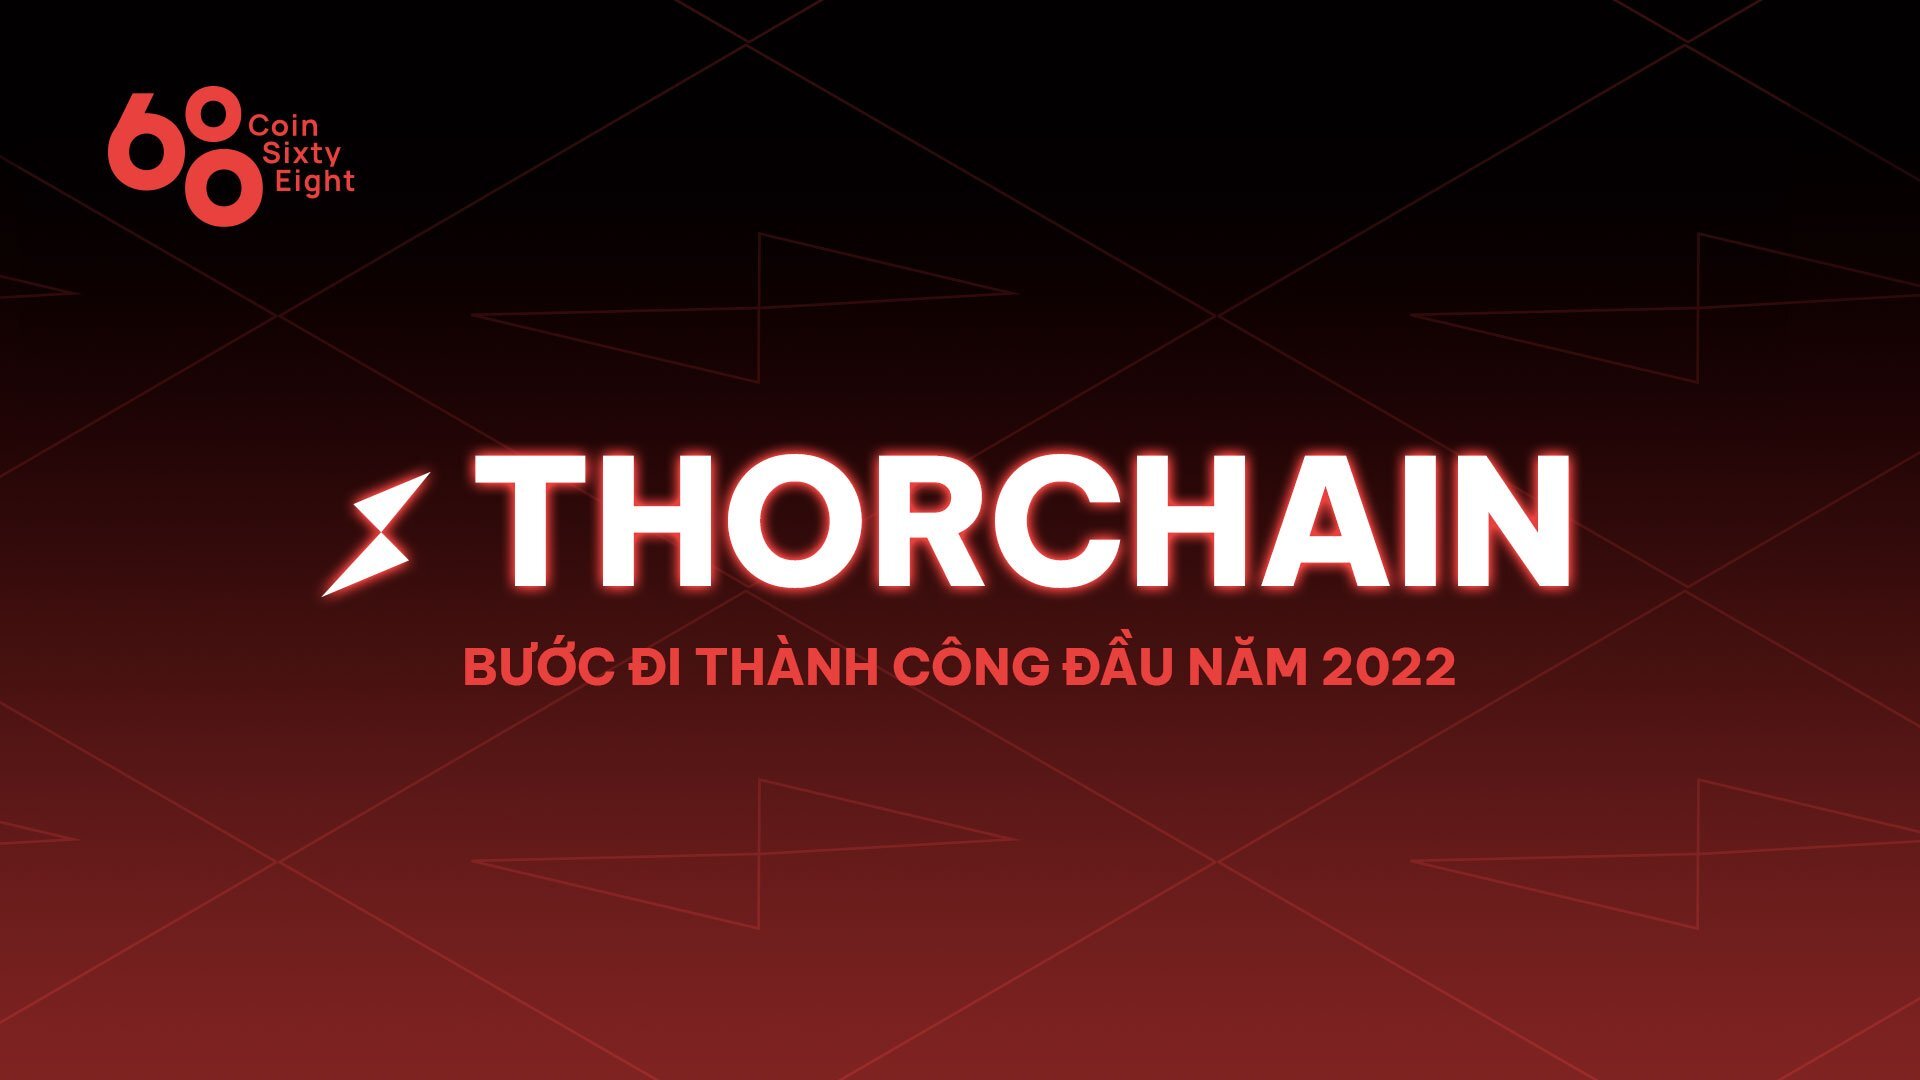 Tăng Trưởng Tvl  Bước Đi Thành Công Của Thorchain Đầu 2022